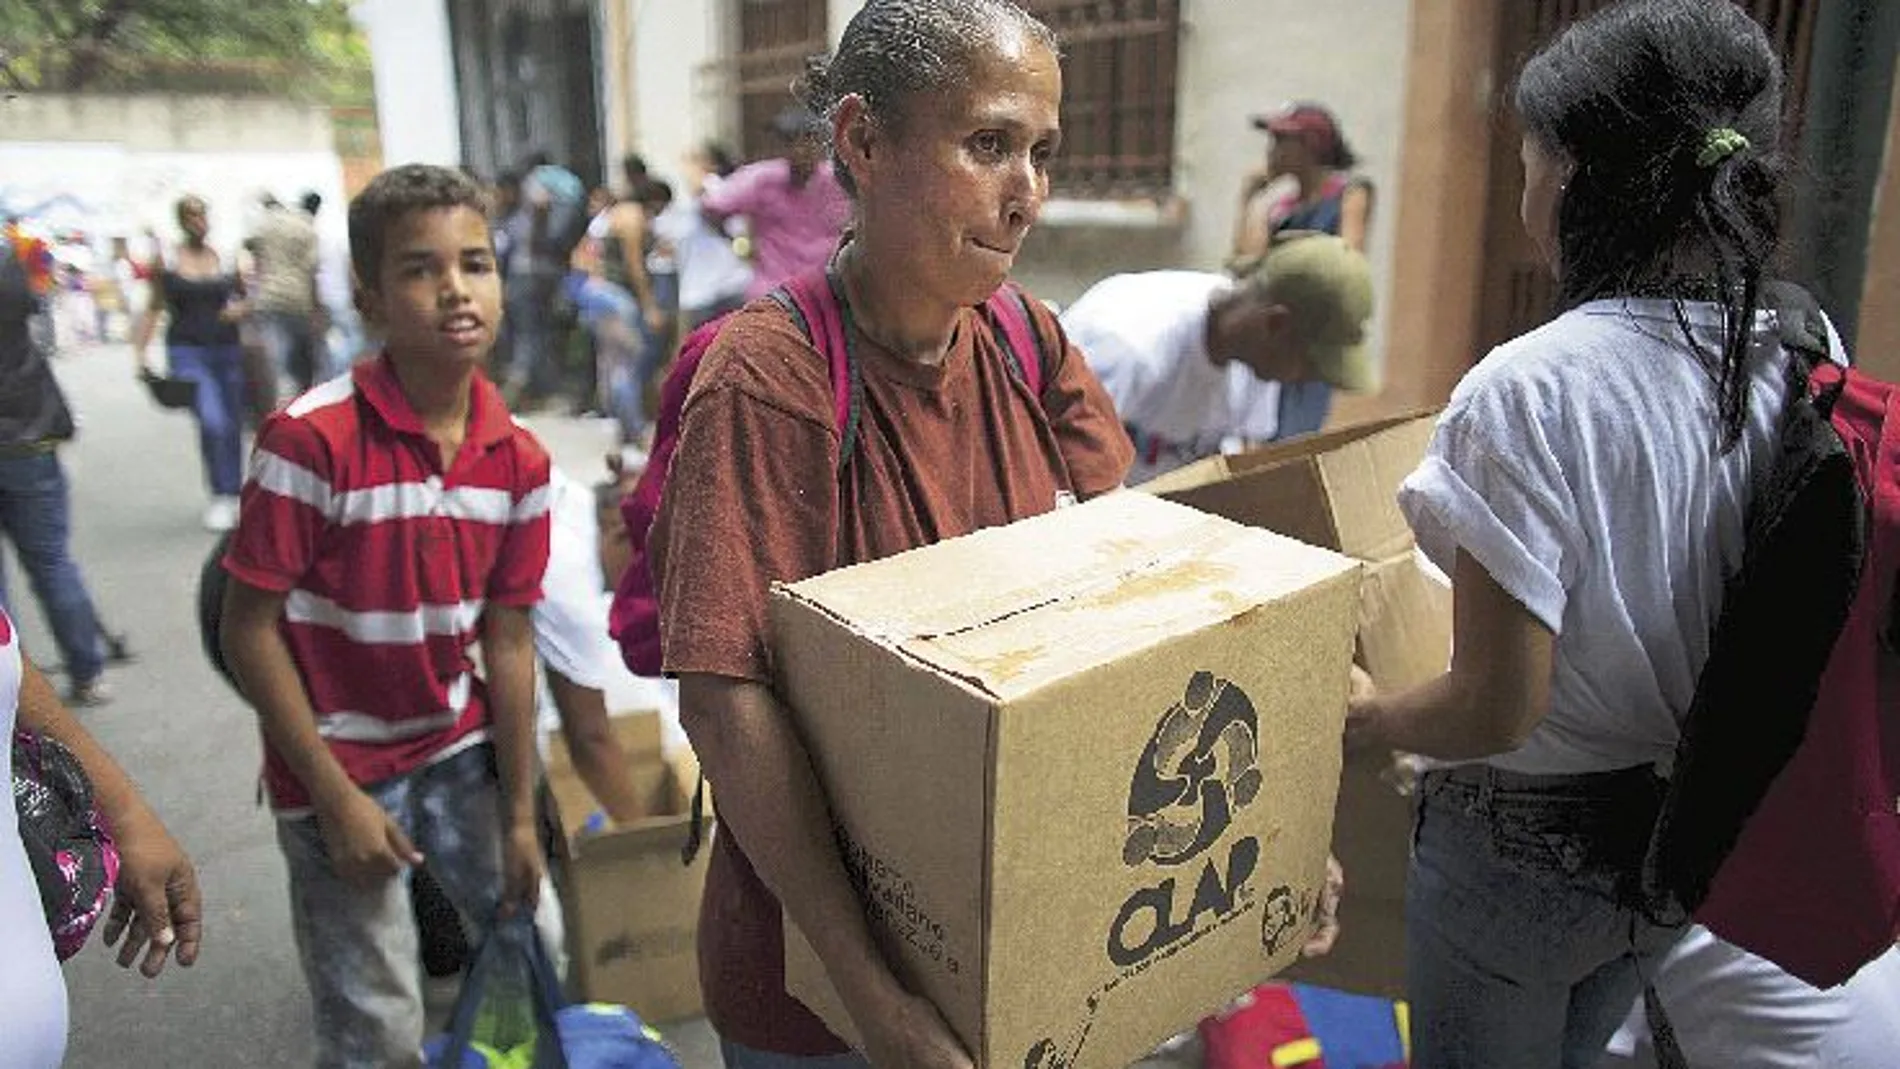 Comida por votos. Una mujer lleva una caja, muy popular en Venezuela llamada Clap, con alimentos básicos como arroz y leche en polvo suministrada por el Gobierno